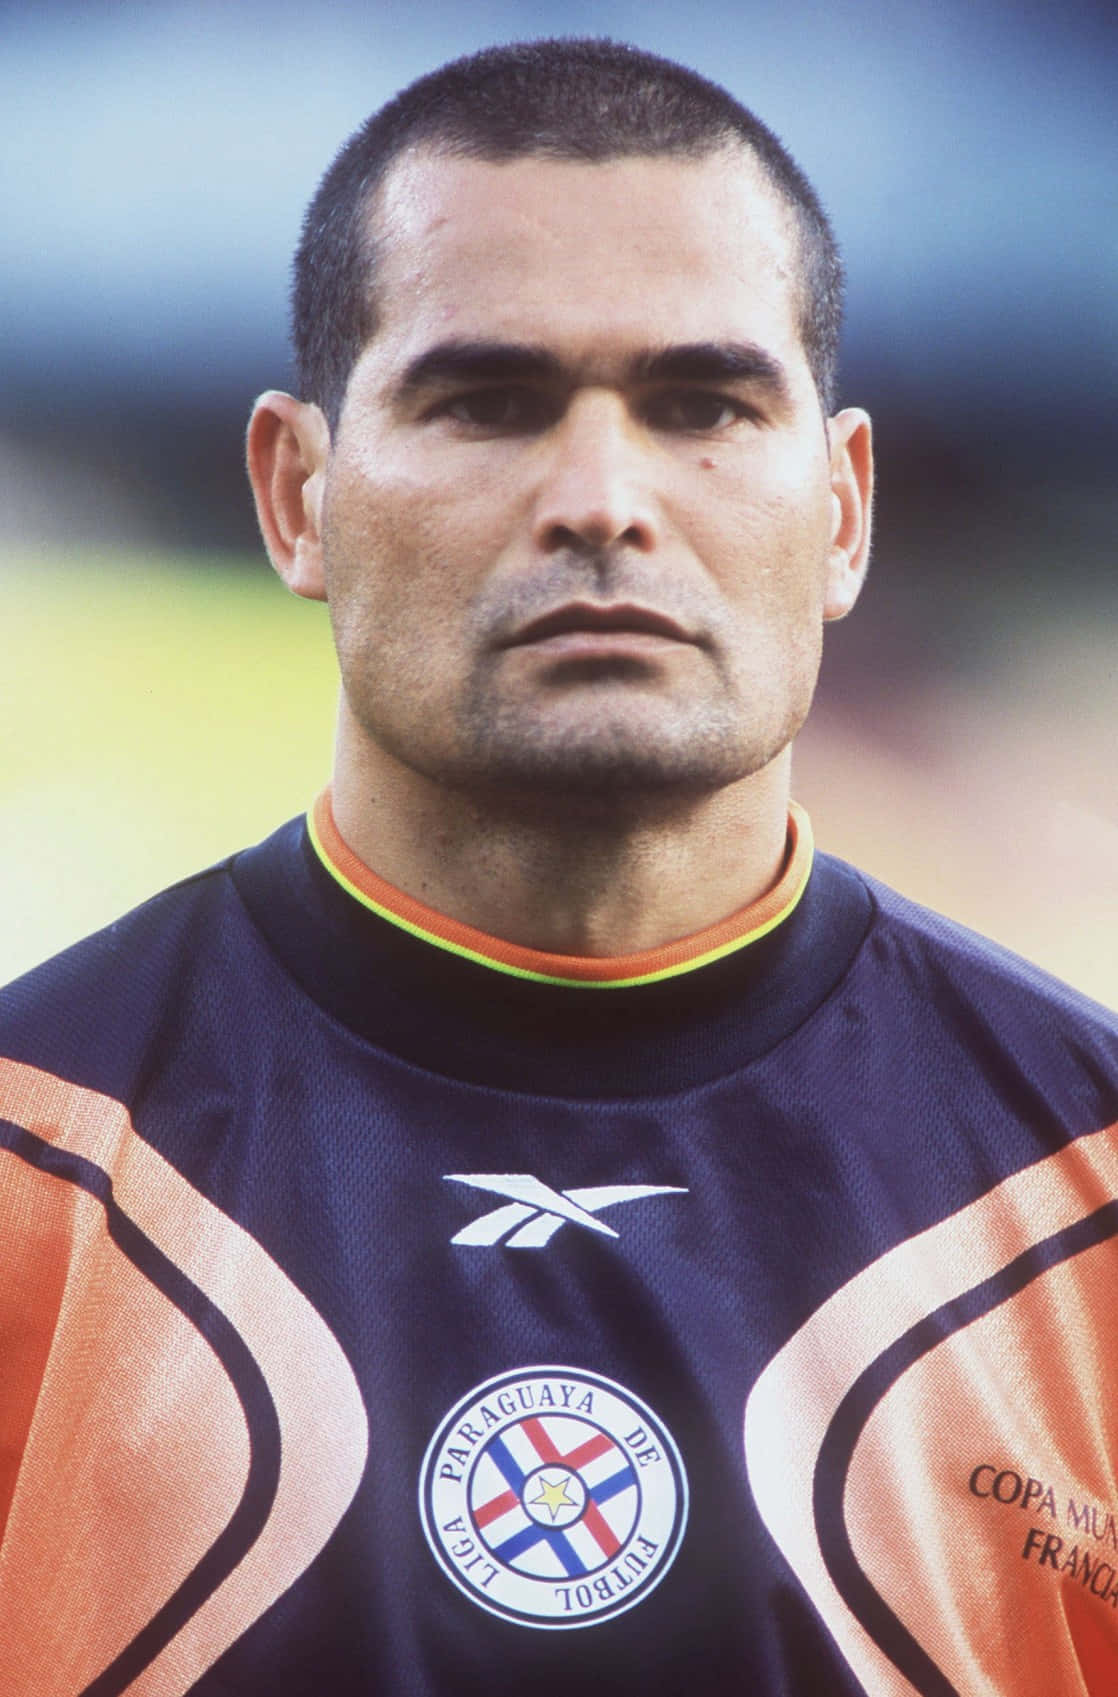 Paraguay Football Team Goalkeeper Jose Luis Chilavert 1998 Portrait Wallpaper